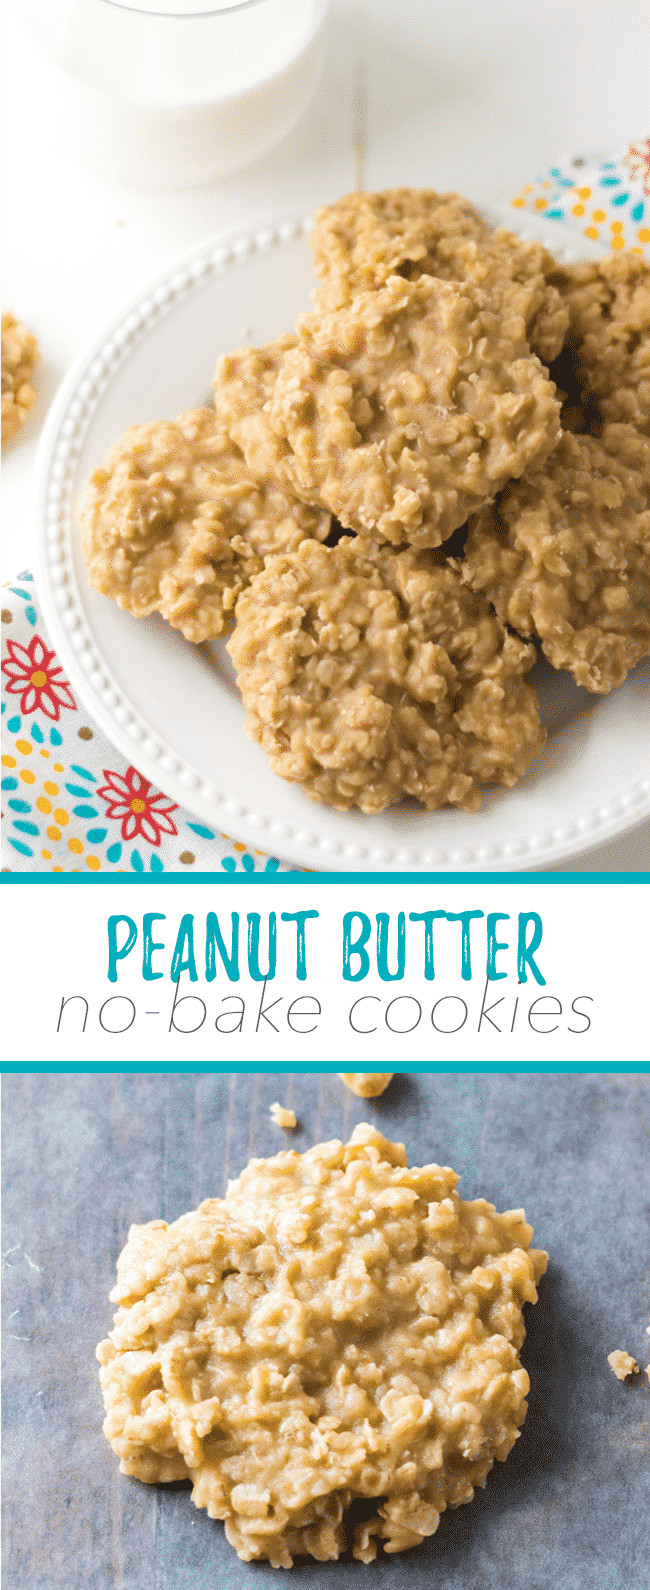 Peanut Butter Cookies No Butter
 Peanut Butter No Bake Cookies